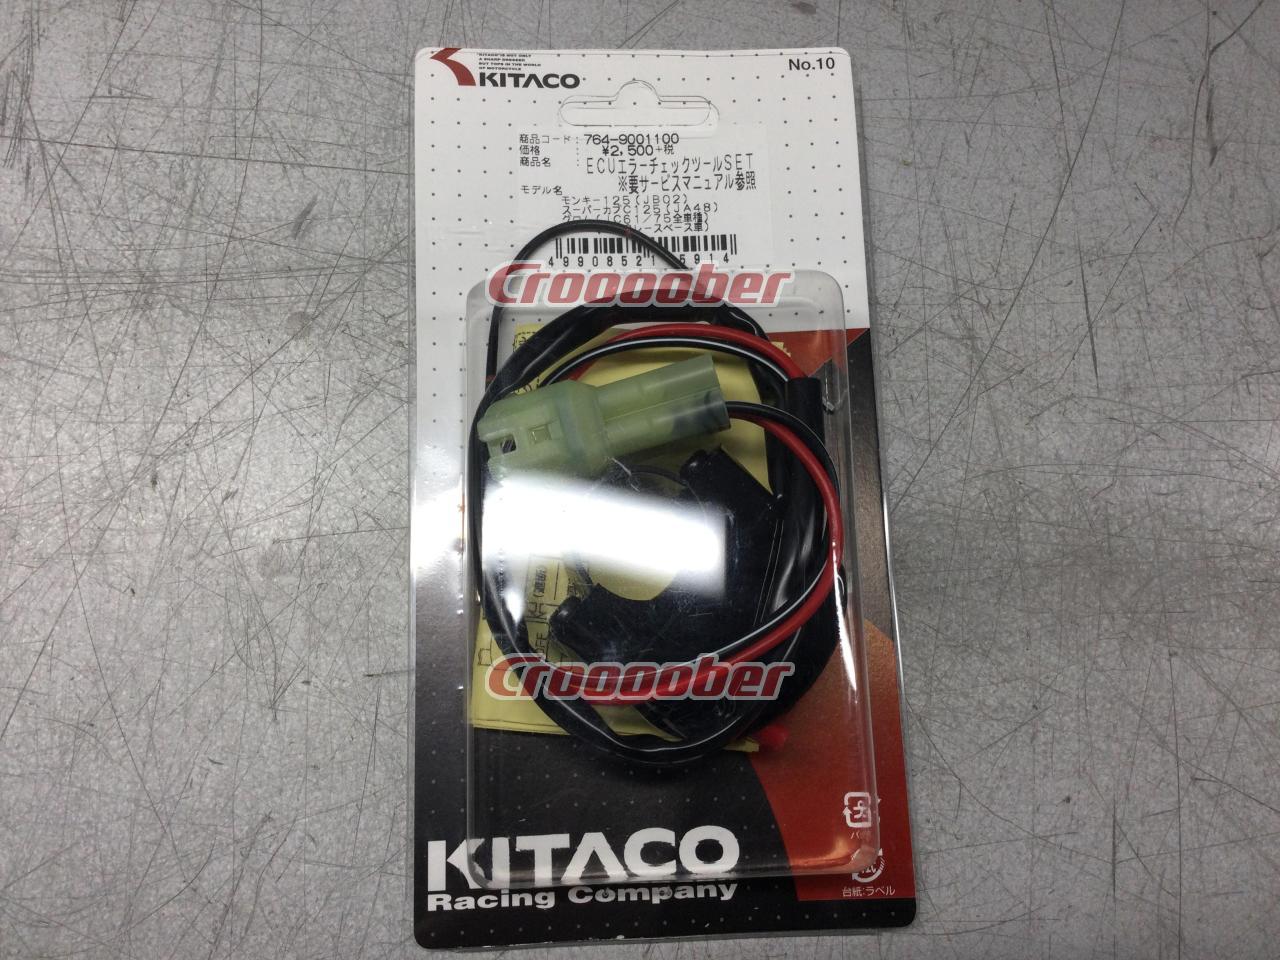 Kitaco(キタコ) [764-9001100] モンキー125/スーパーカブC125/グロム 